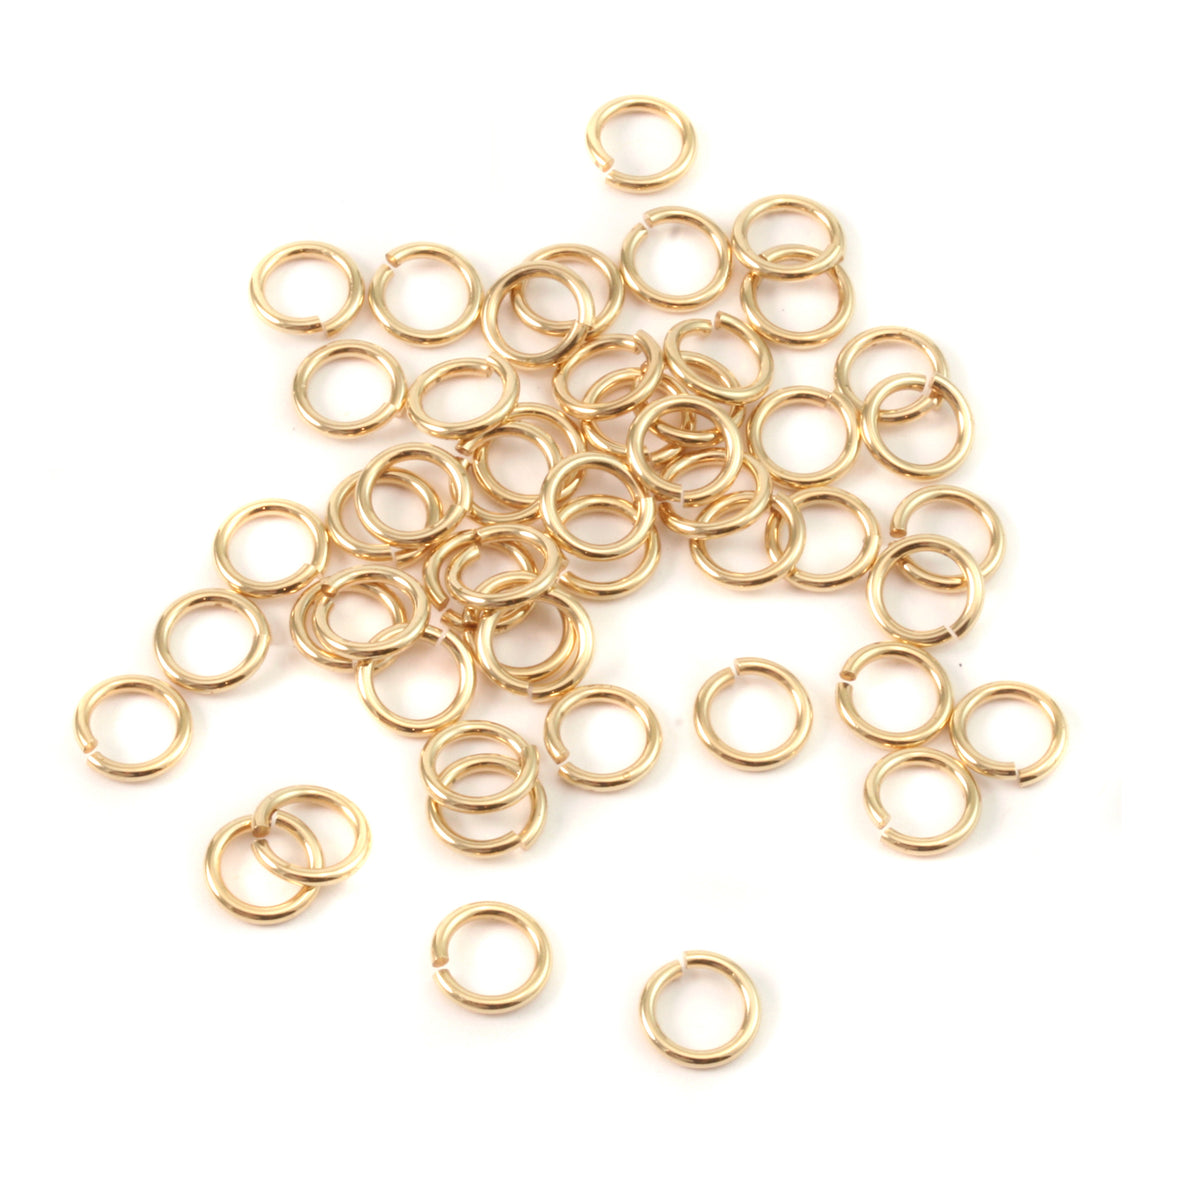 Aluminum 4mm I.D. 18 Gauge Jump Rings, 1 oz (~578 rings) – Beaducation